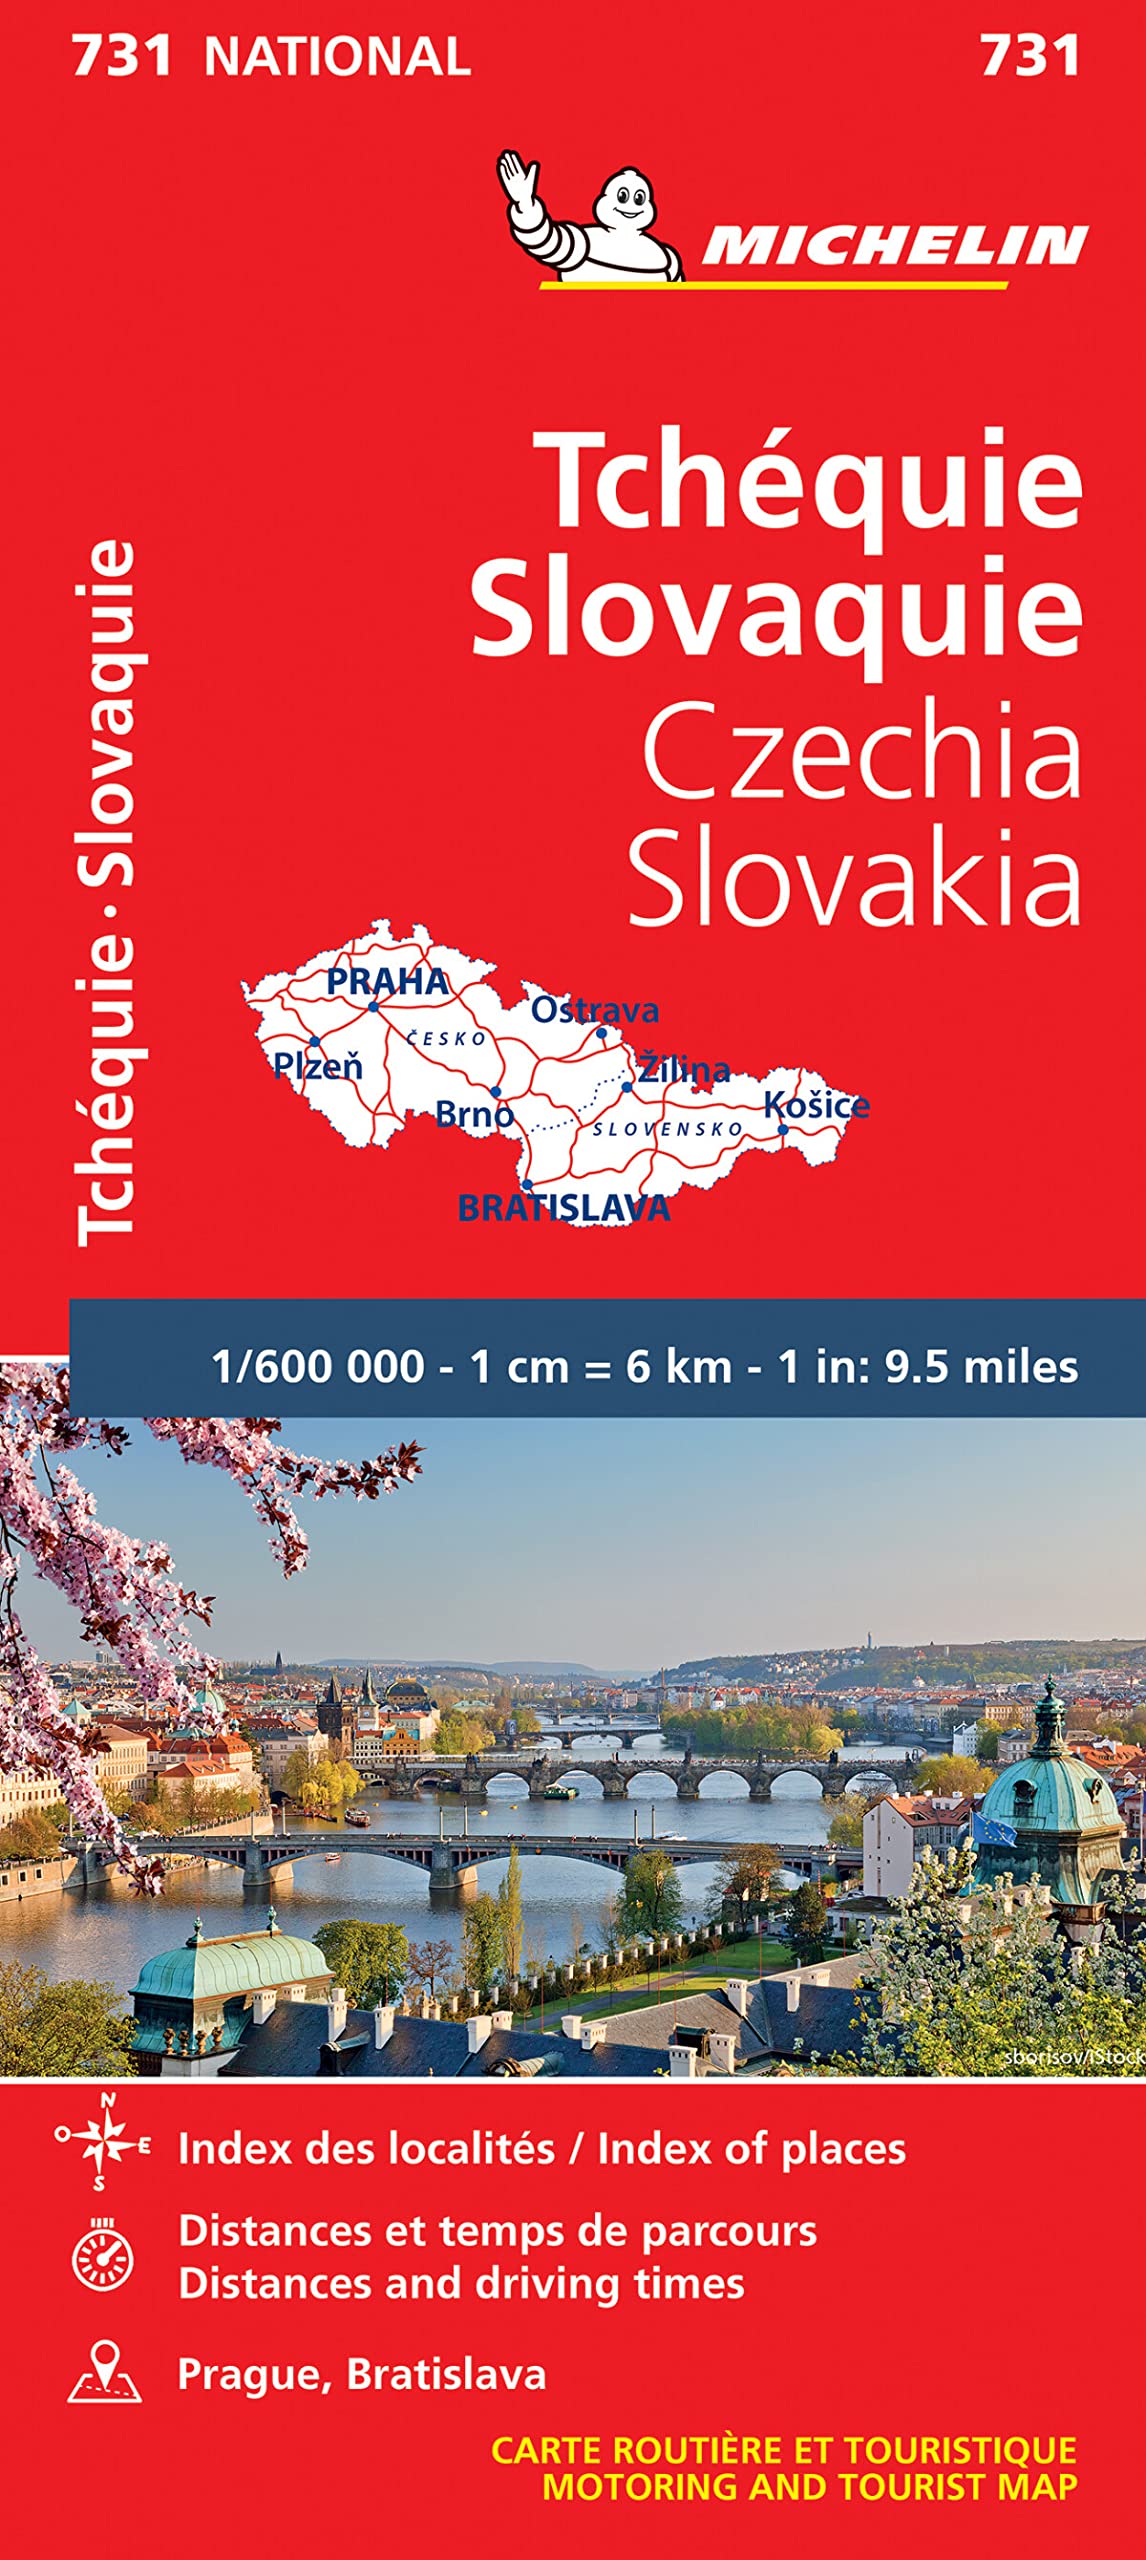 צ'כיה וסלובקיה 731